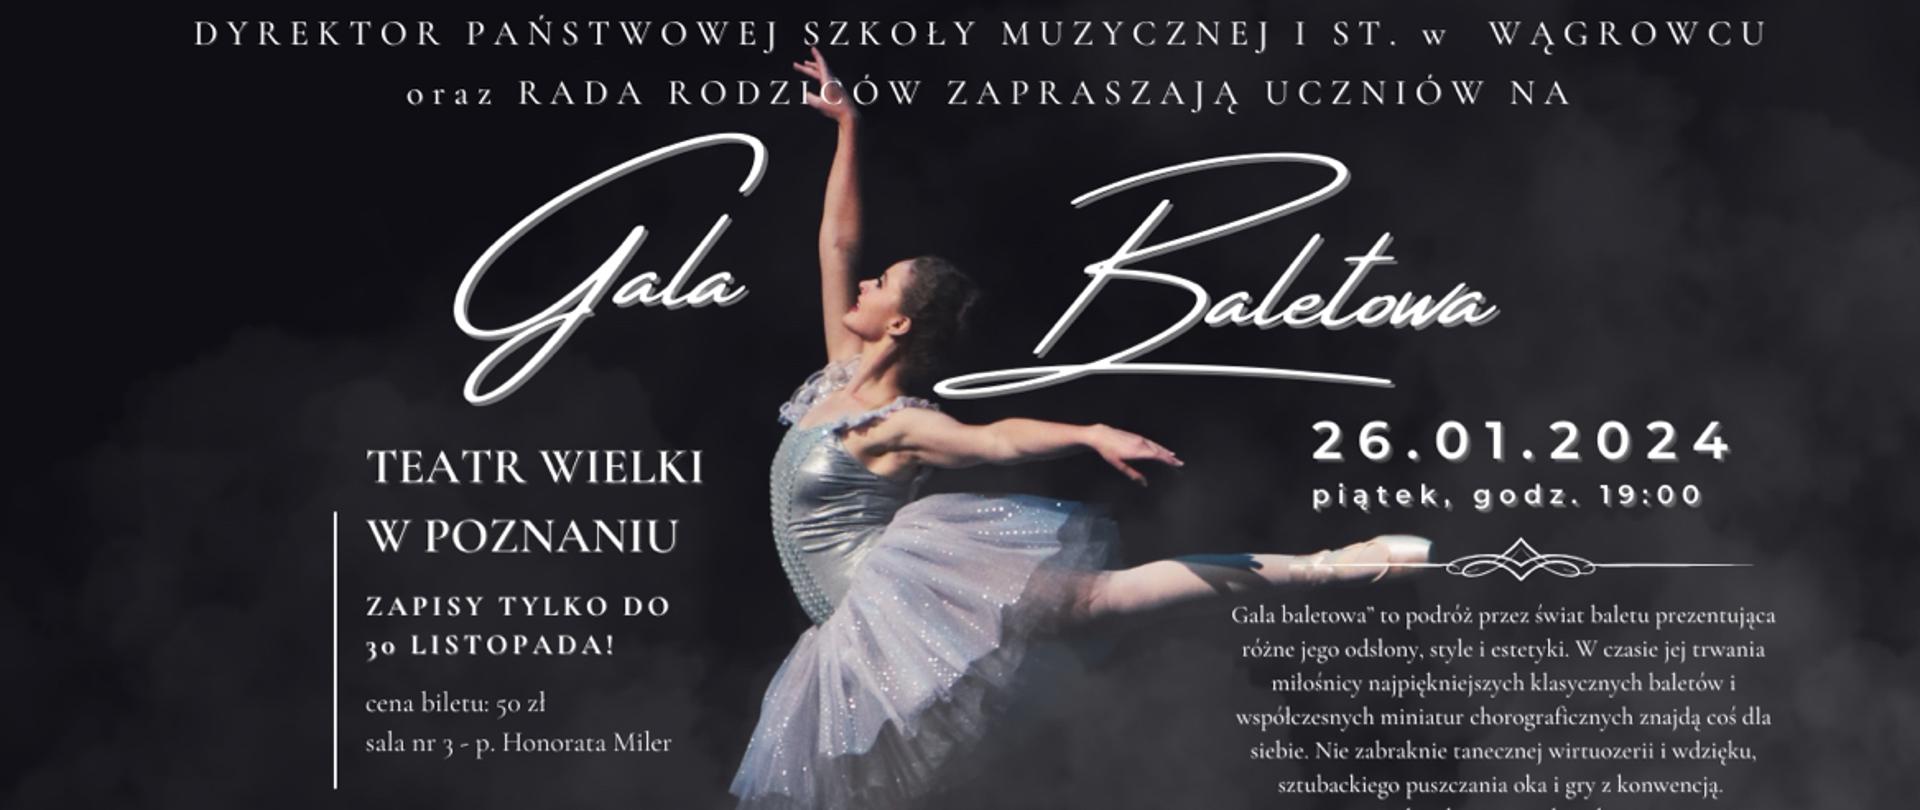 Zdjęcie przedstawia tańczącą baletnicę oraz informacje dotyczące wyjazdu na galę baletową w dniu 24.01.2024r.